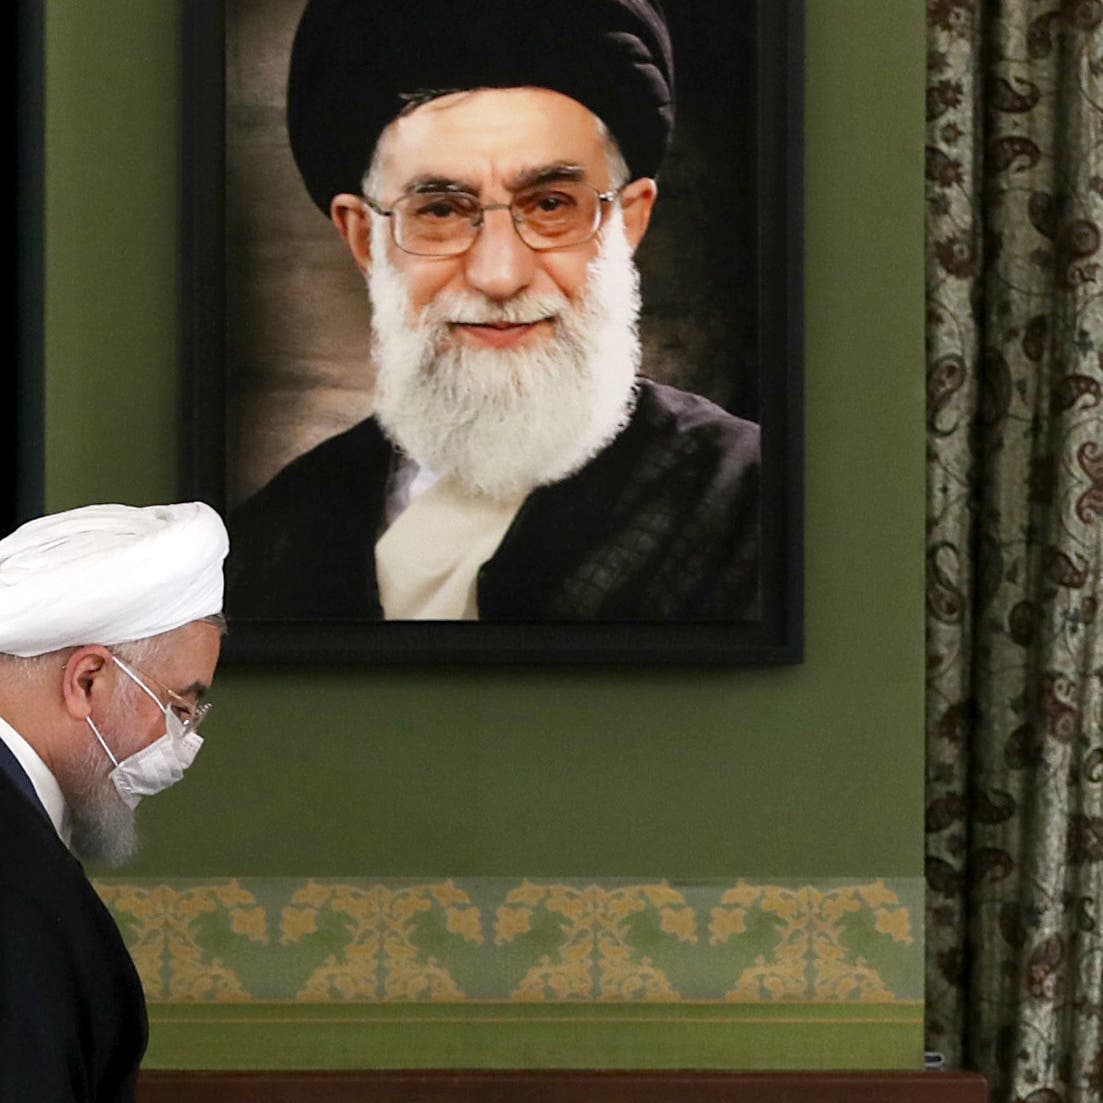 روحاني يلمح للتفاوض: فلتنتهز الإدارة الأميركية الفرصة